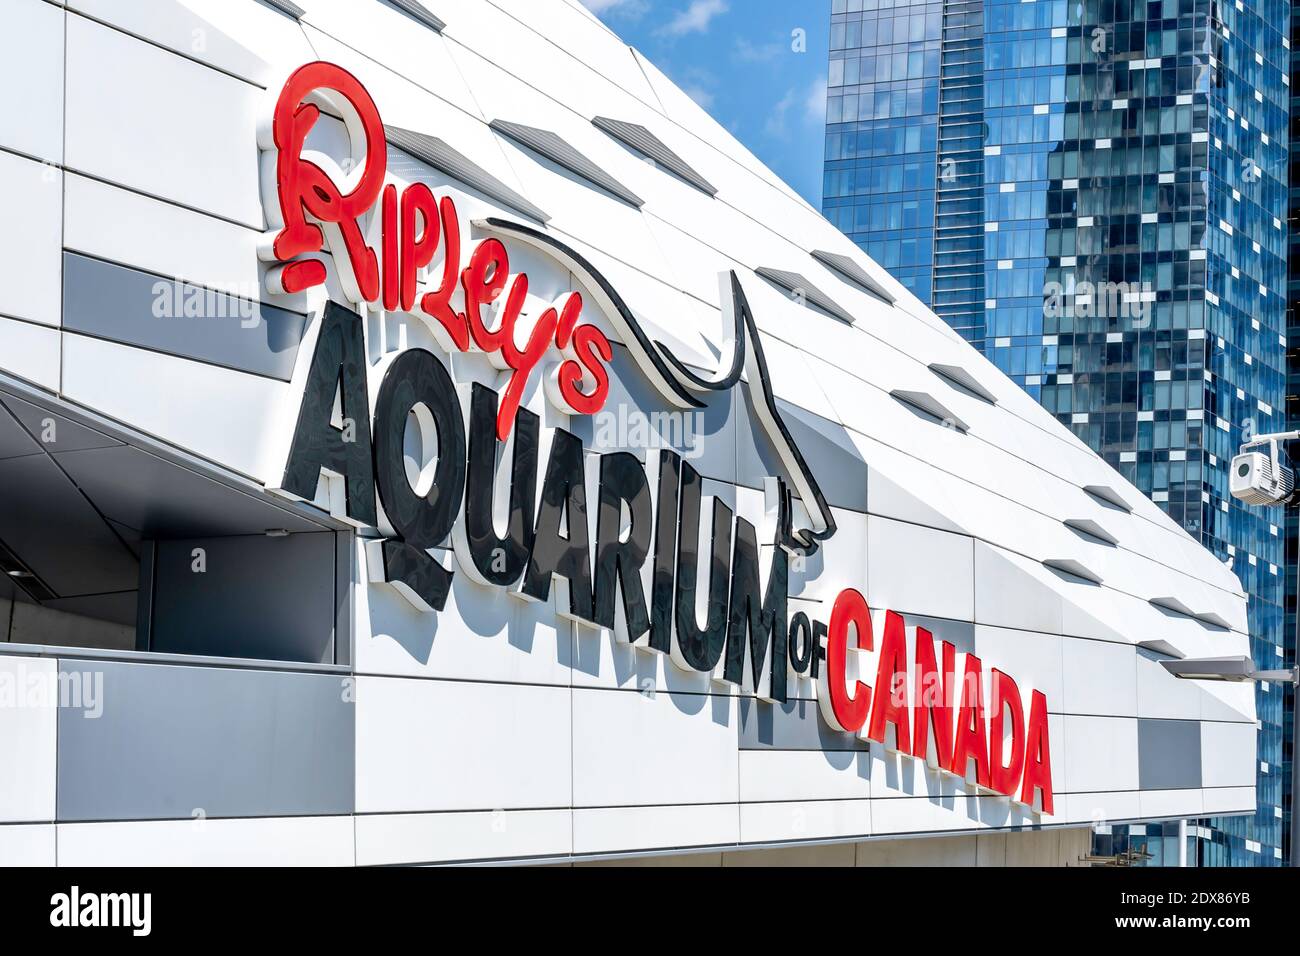 Sign of Ripley's aquarium, a public aquarium in Toronto, Ontario, Canada. Stock Photo